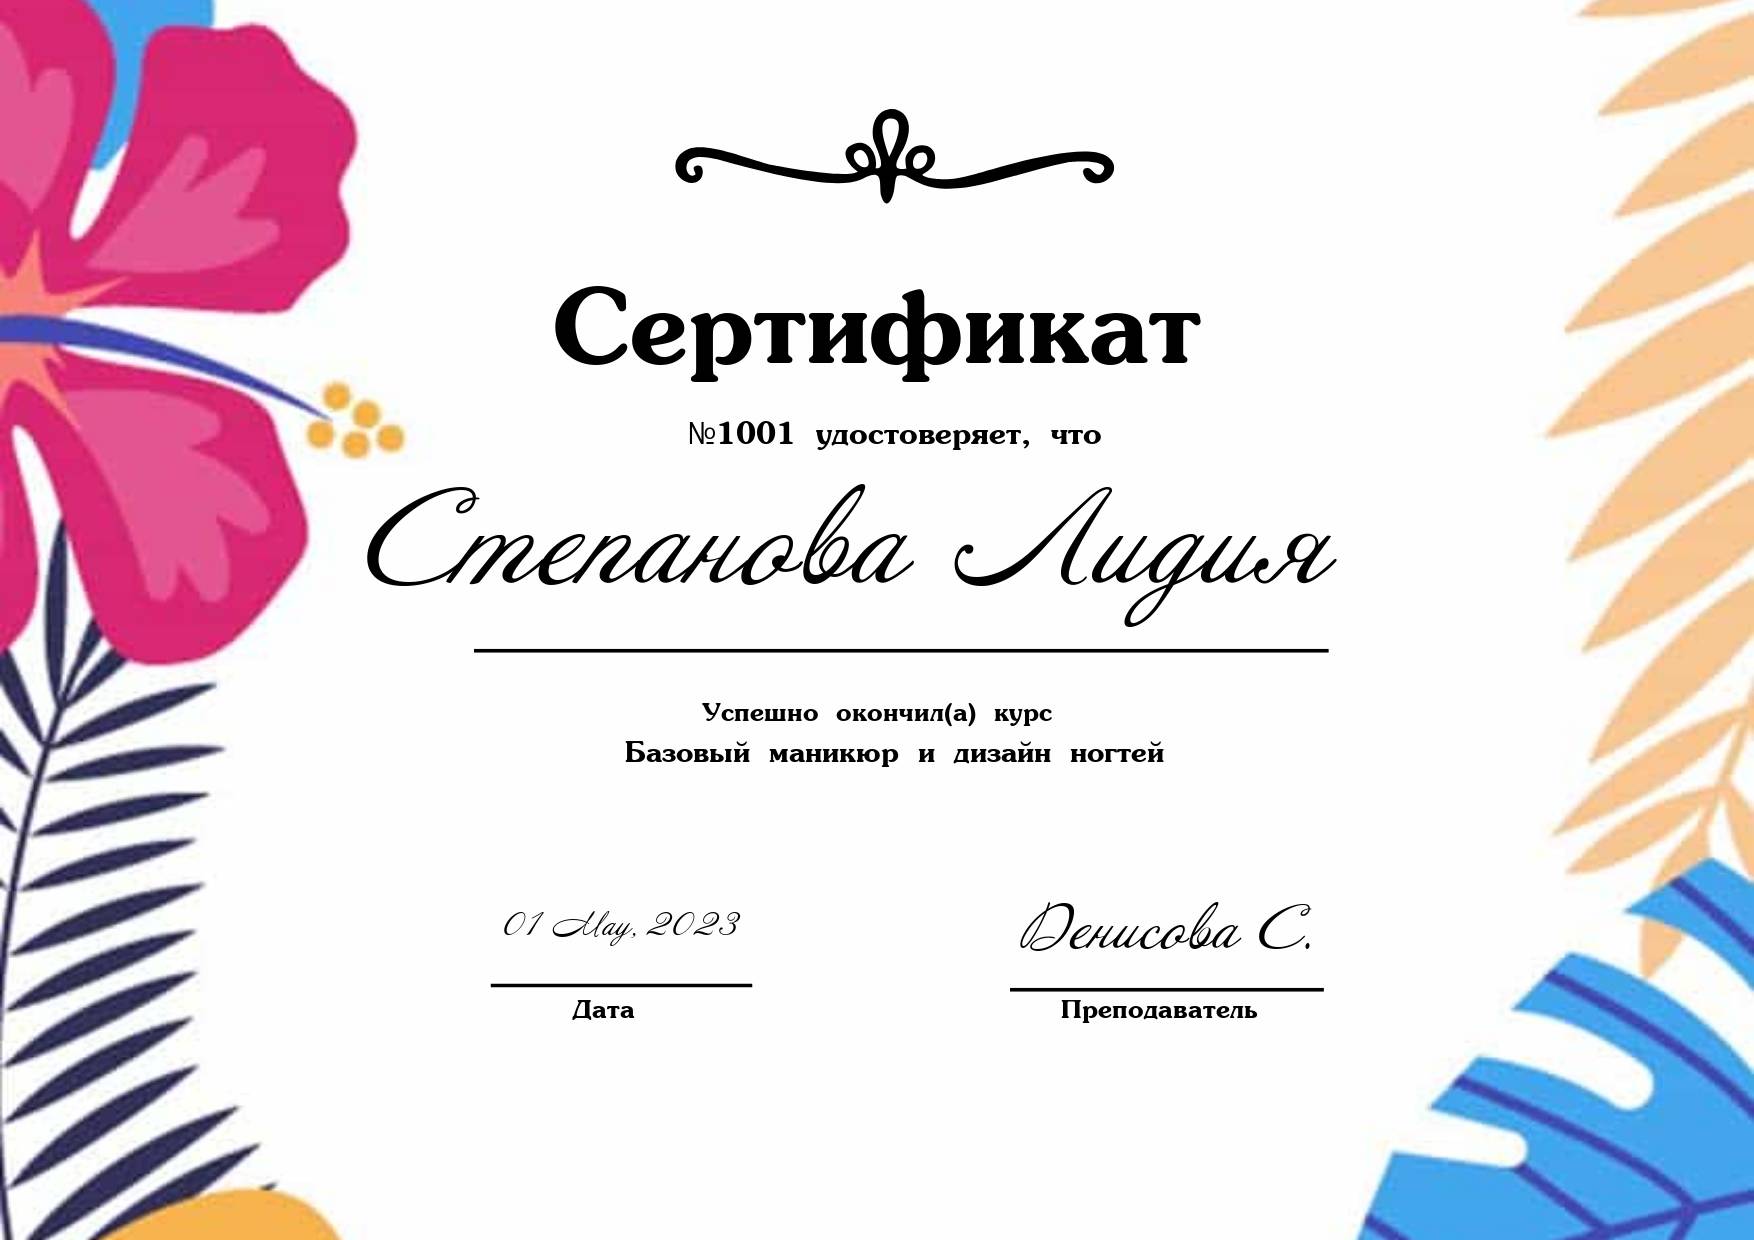 Иллюстрированный сертификат с тропическими цветами и листьями